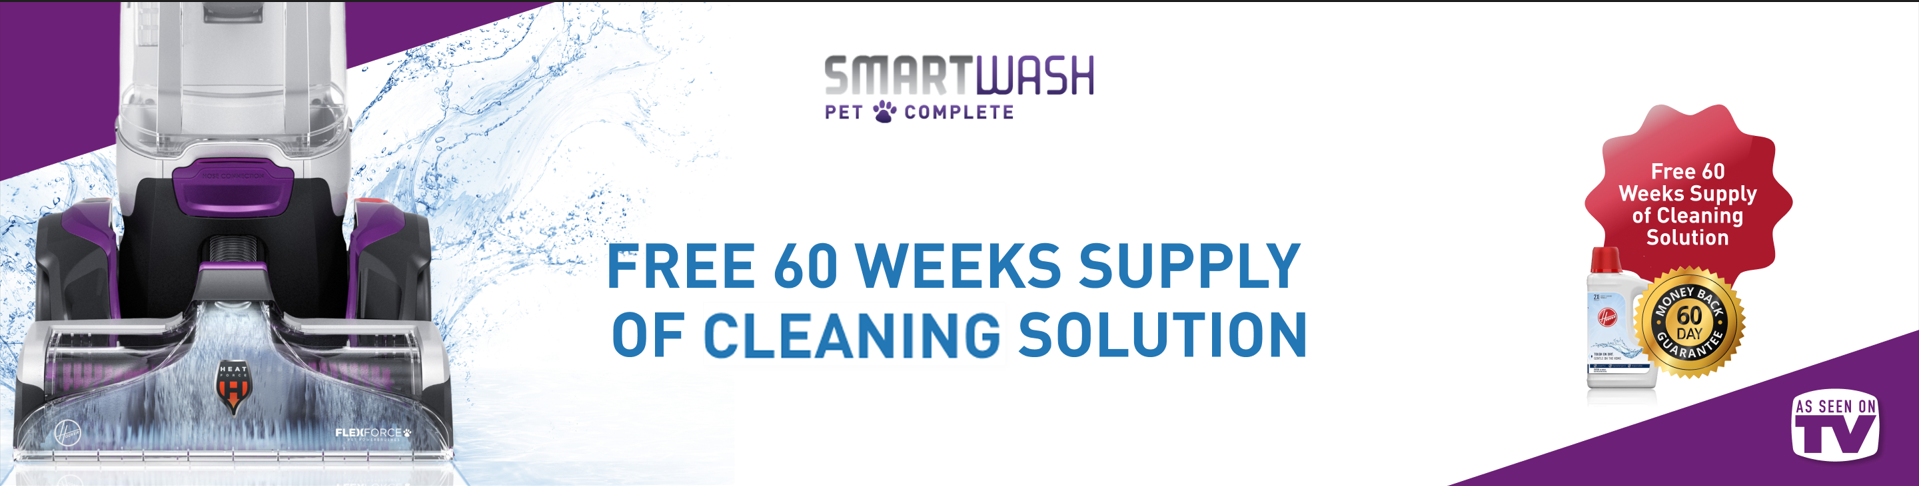 Hoover SmartWash Pet Complete Carpet Cleaner